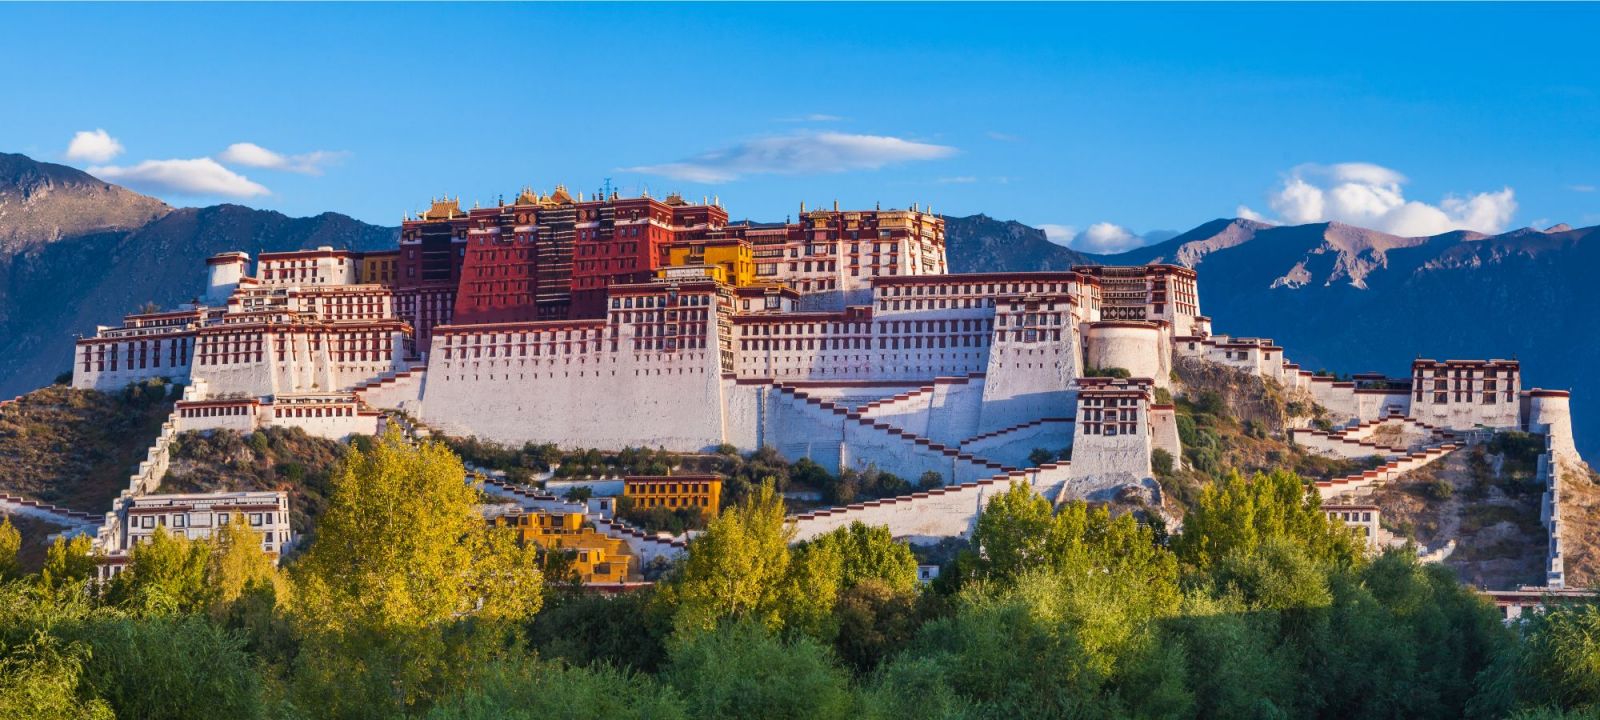 Lhasa to Kathmandu - Potala Monastery, Lhasa